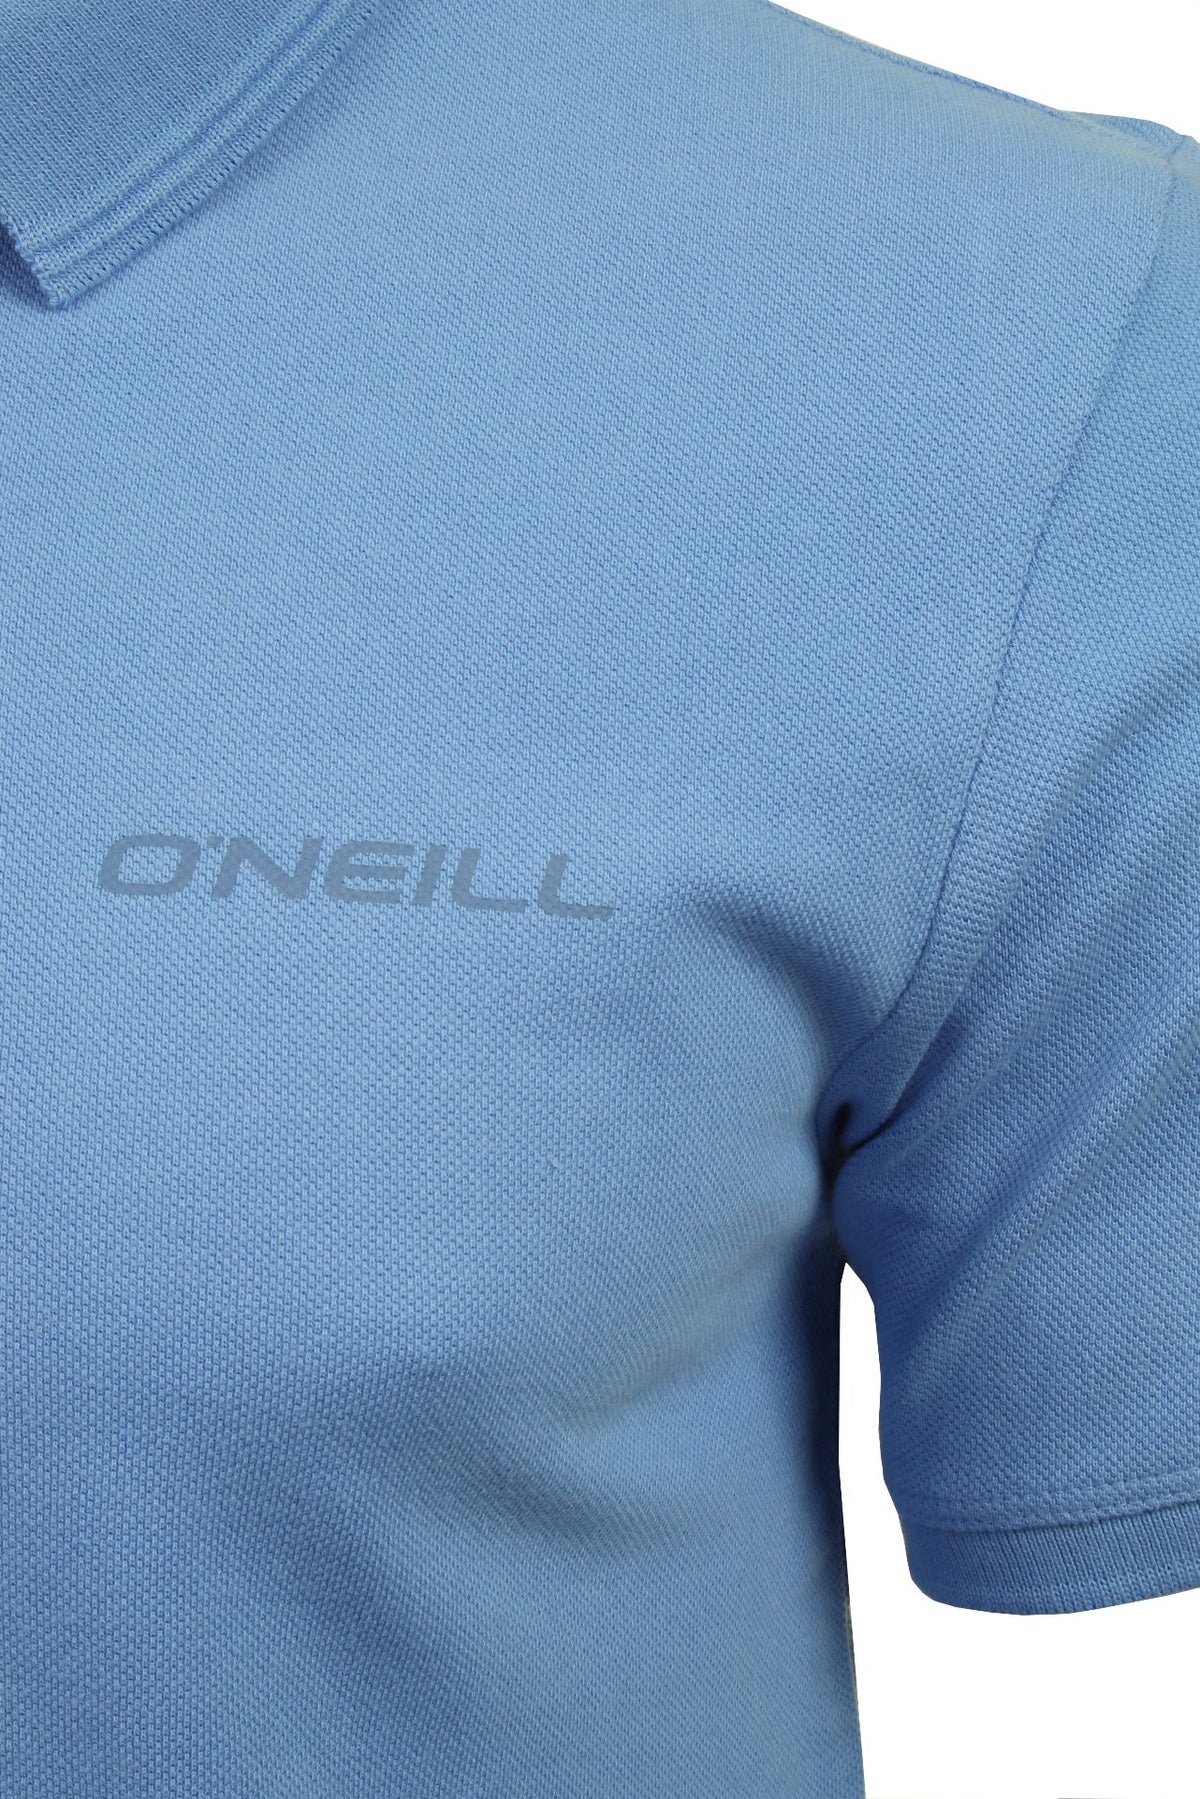 O'Neill Mens Pique Polo T-Shirt, 02, 9A2402, Blue Heven